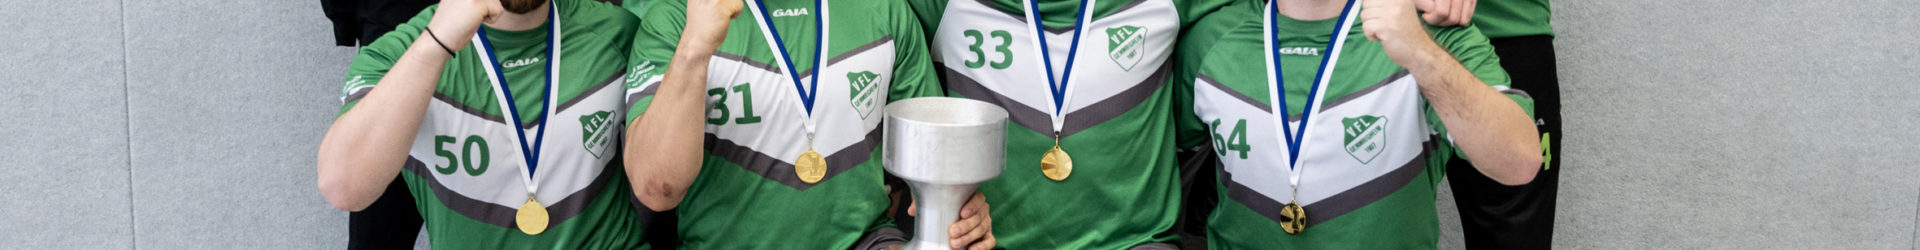 Ultimate-Frisbee Team des VfL Gemmrigheim holt den Titel